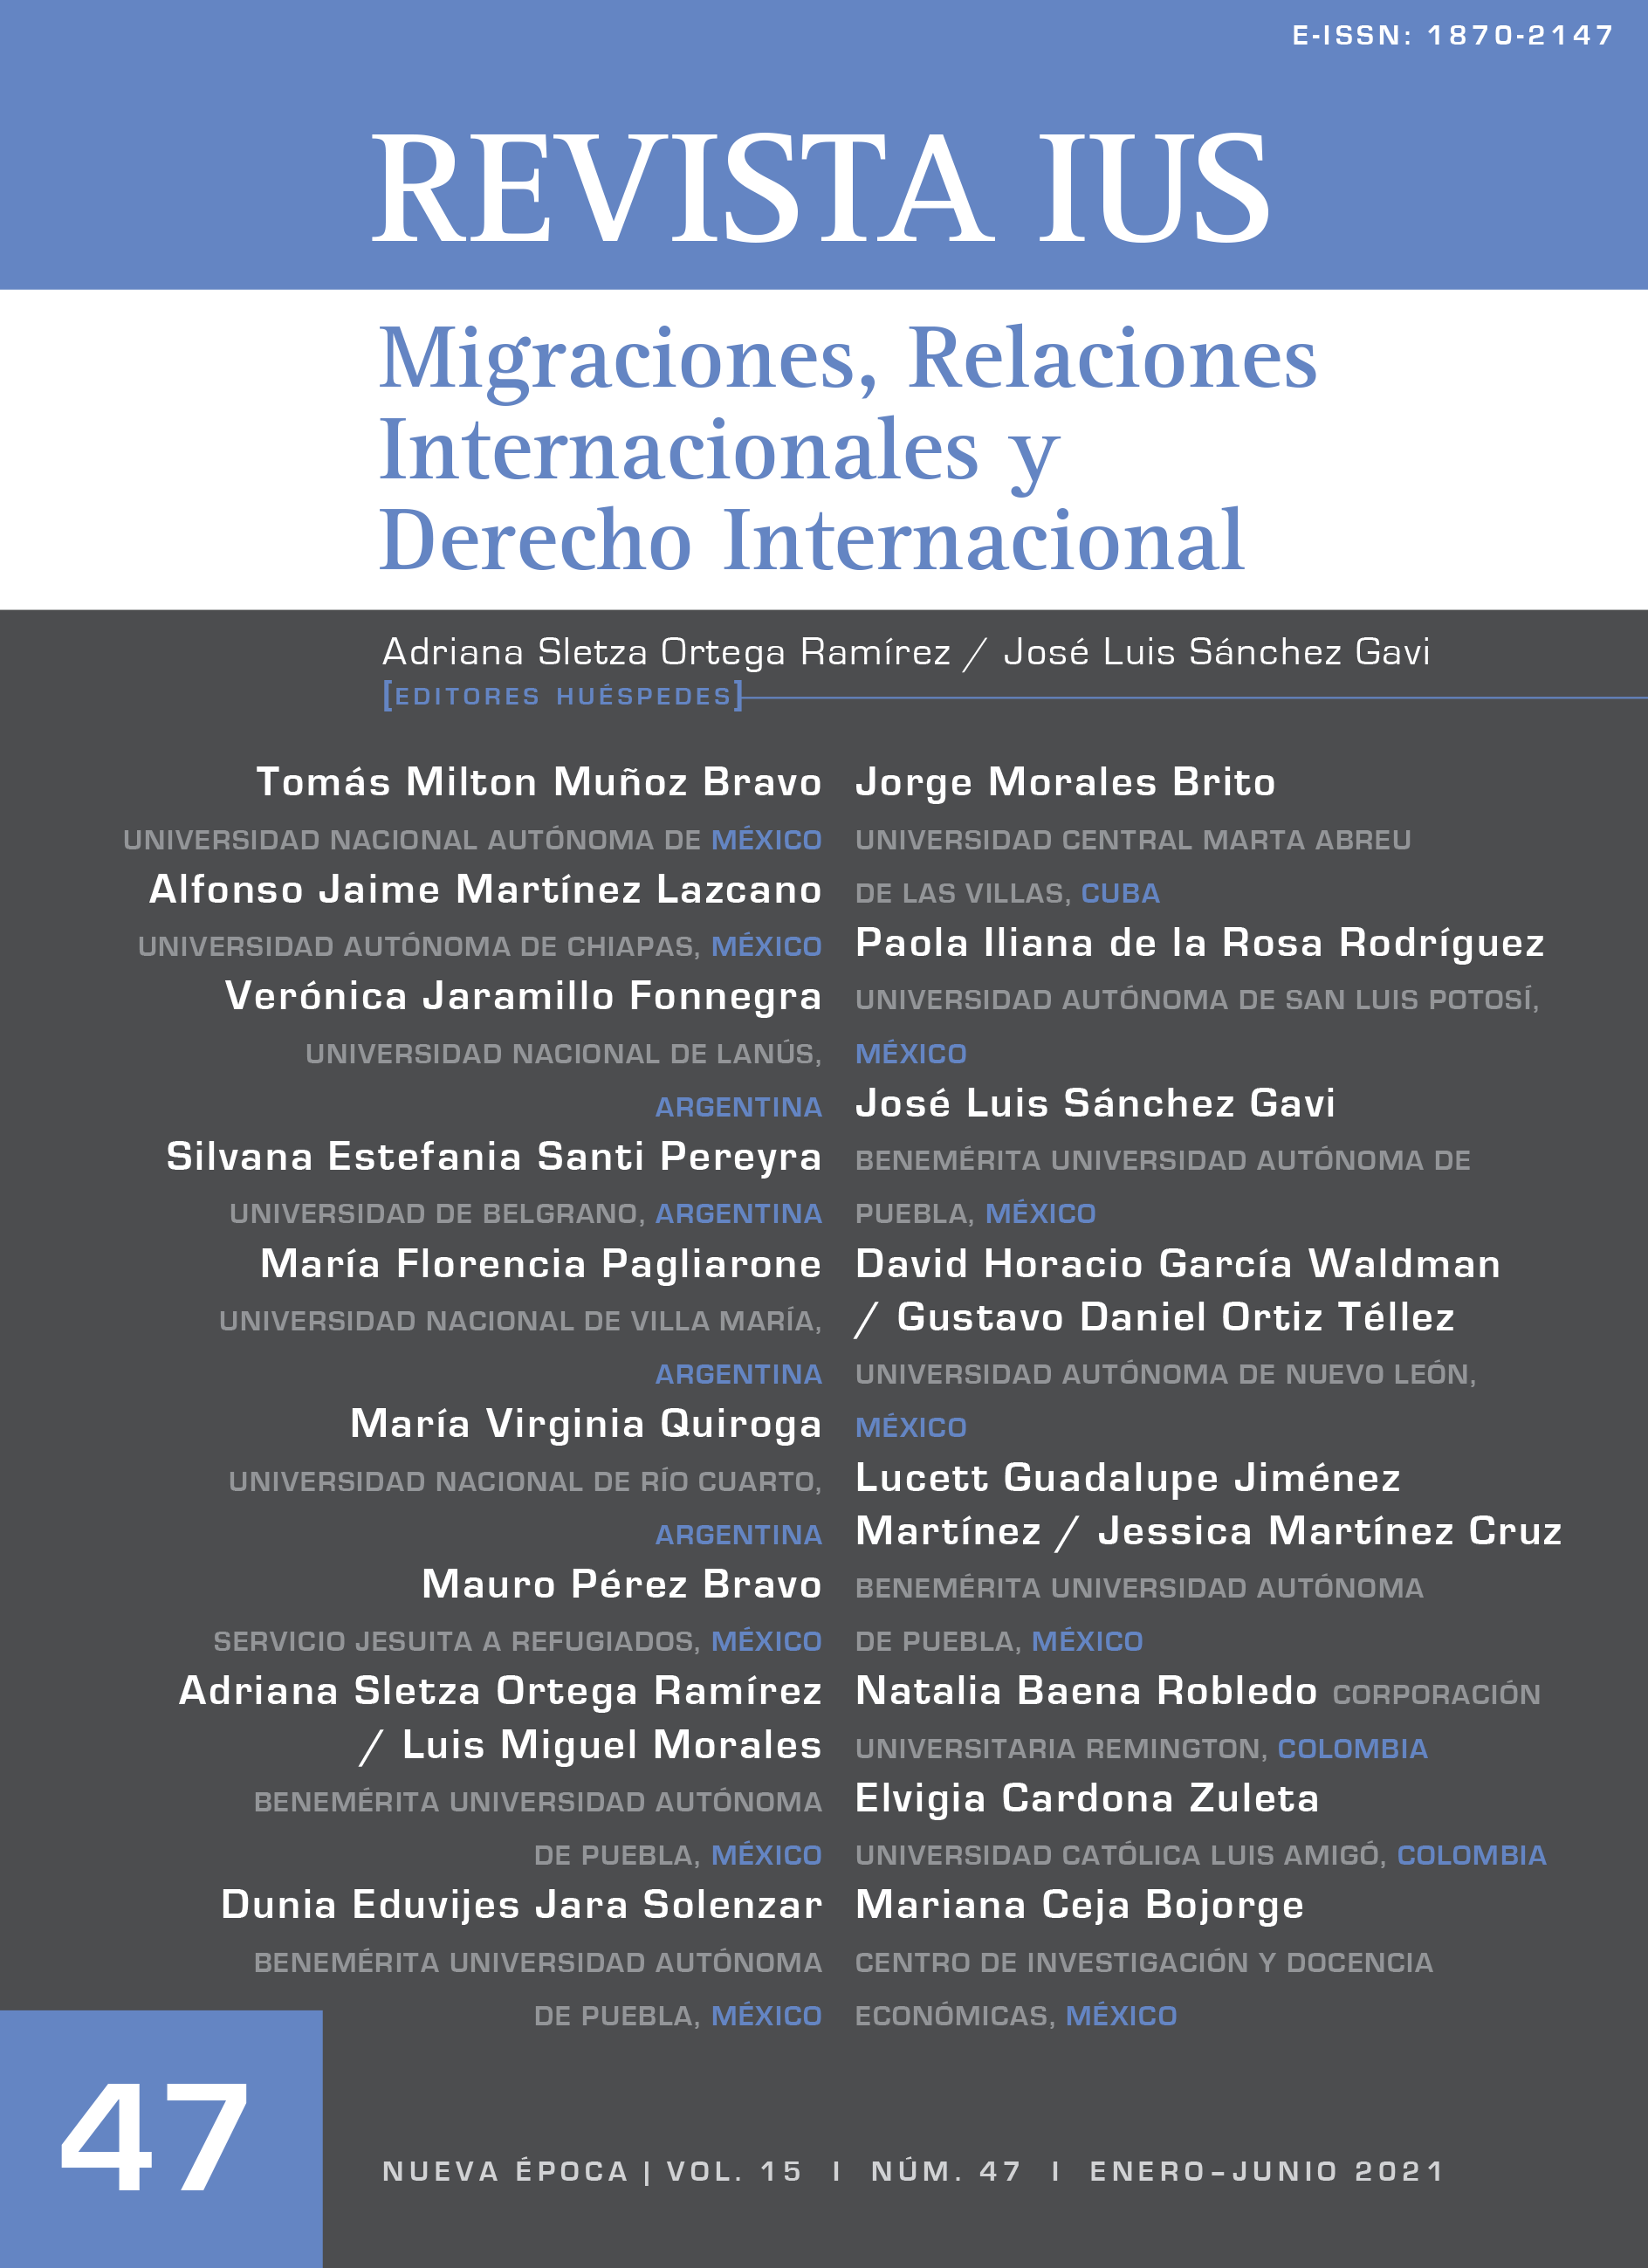 					Ver Vol. 15 Núm. 47 (2021): Migraciones, Relaciones Internacionales y Derecho Internacional
				